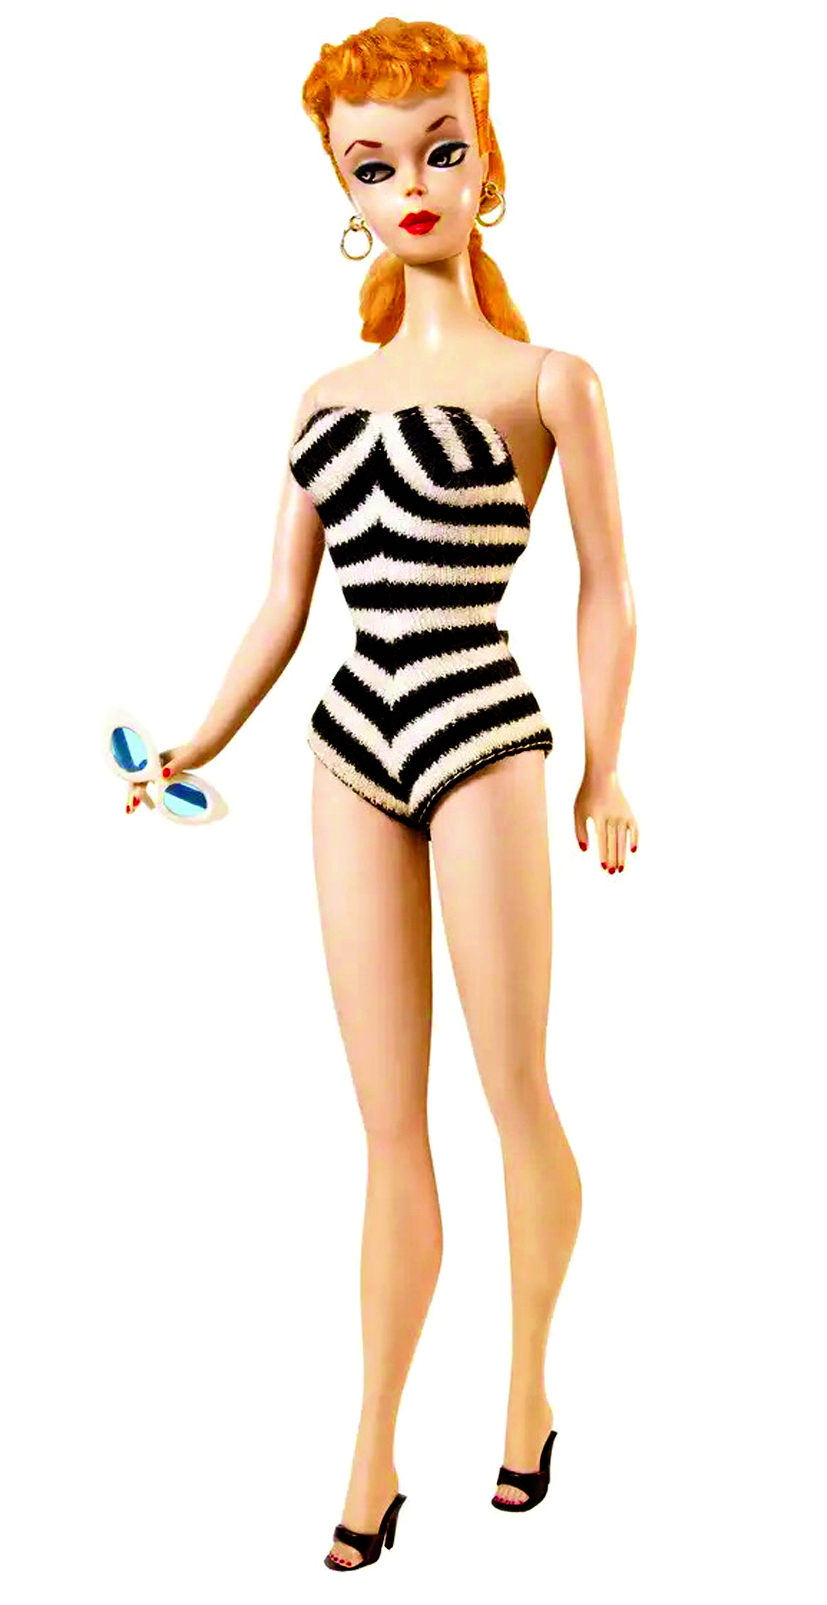 Búp bê Barbie  đầu tiên được  phát hành năm 1959 ẢNH: BARBIE MEDIA